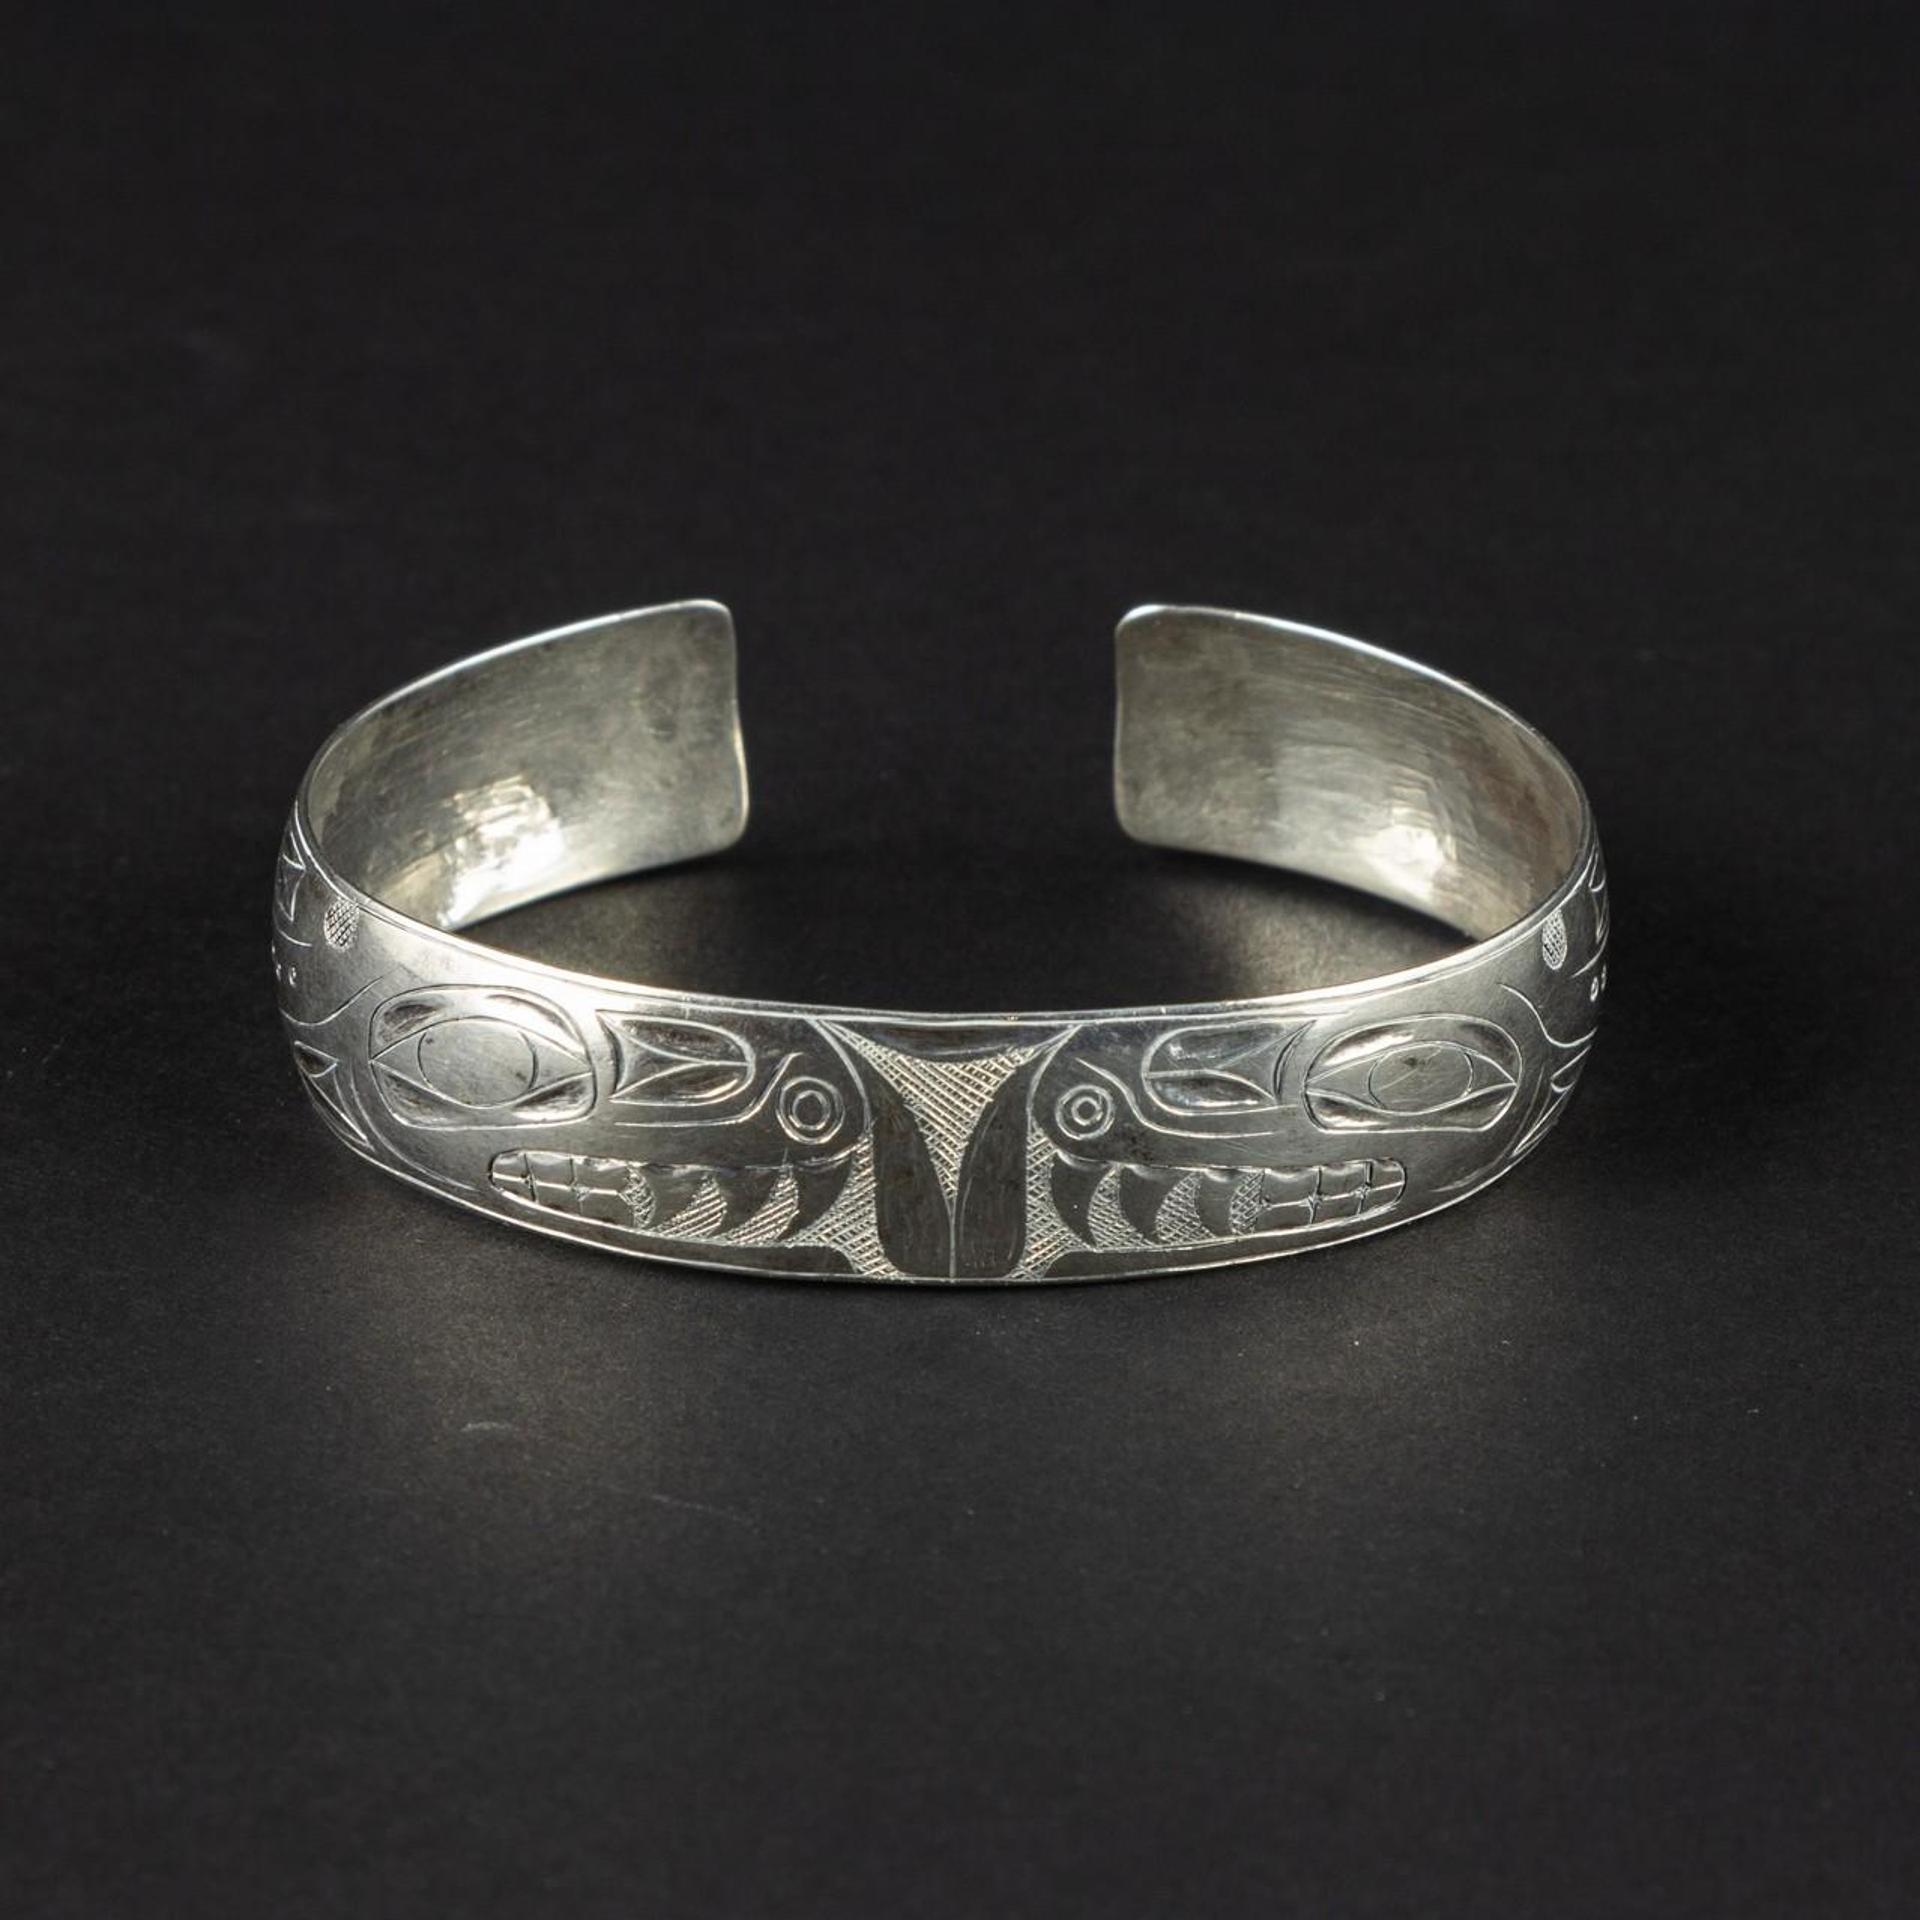 Art Adams - sterling cuff bracelet